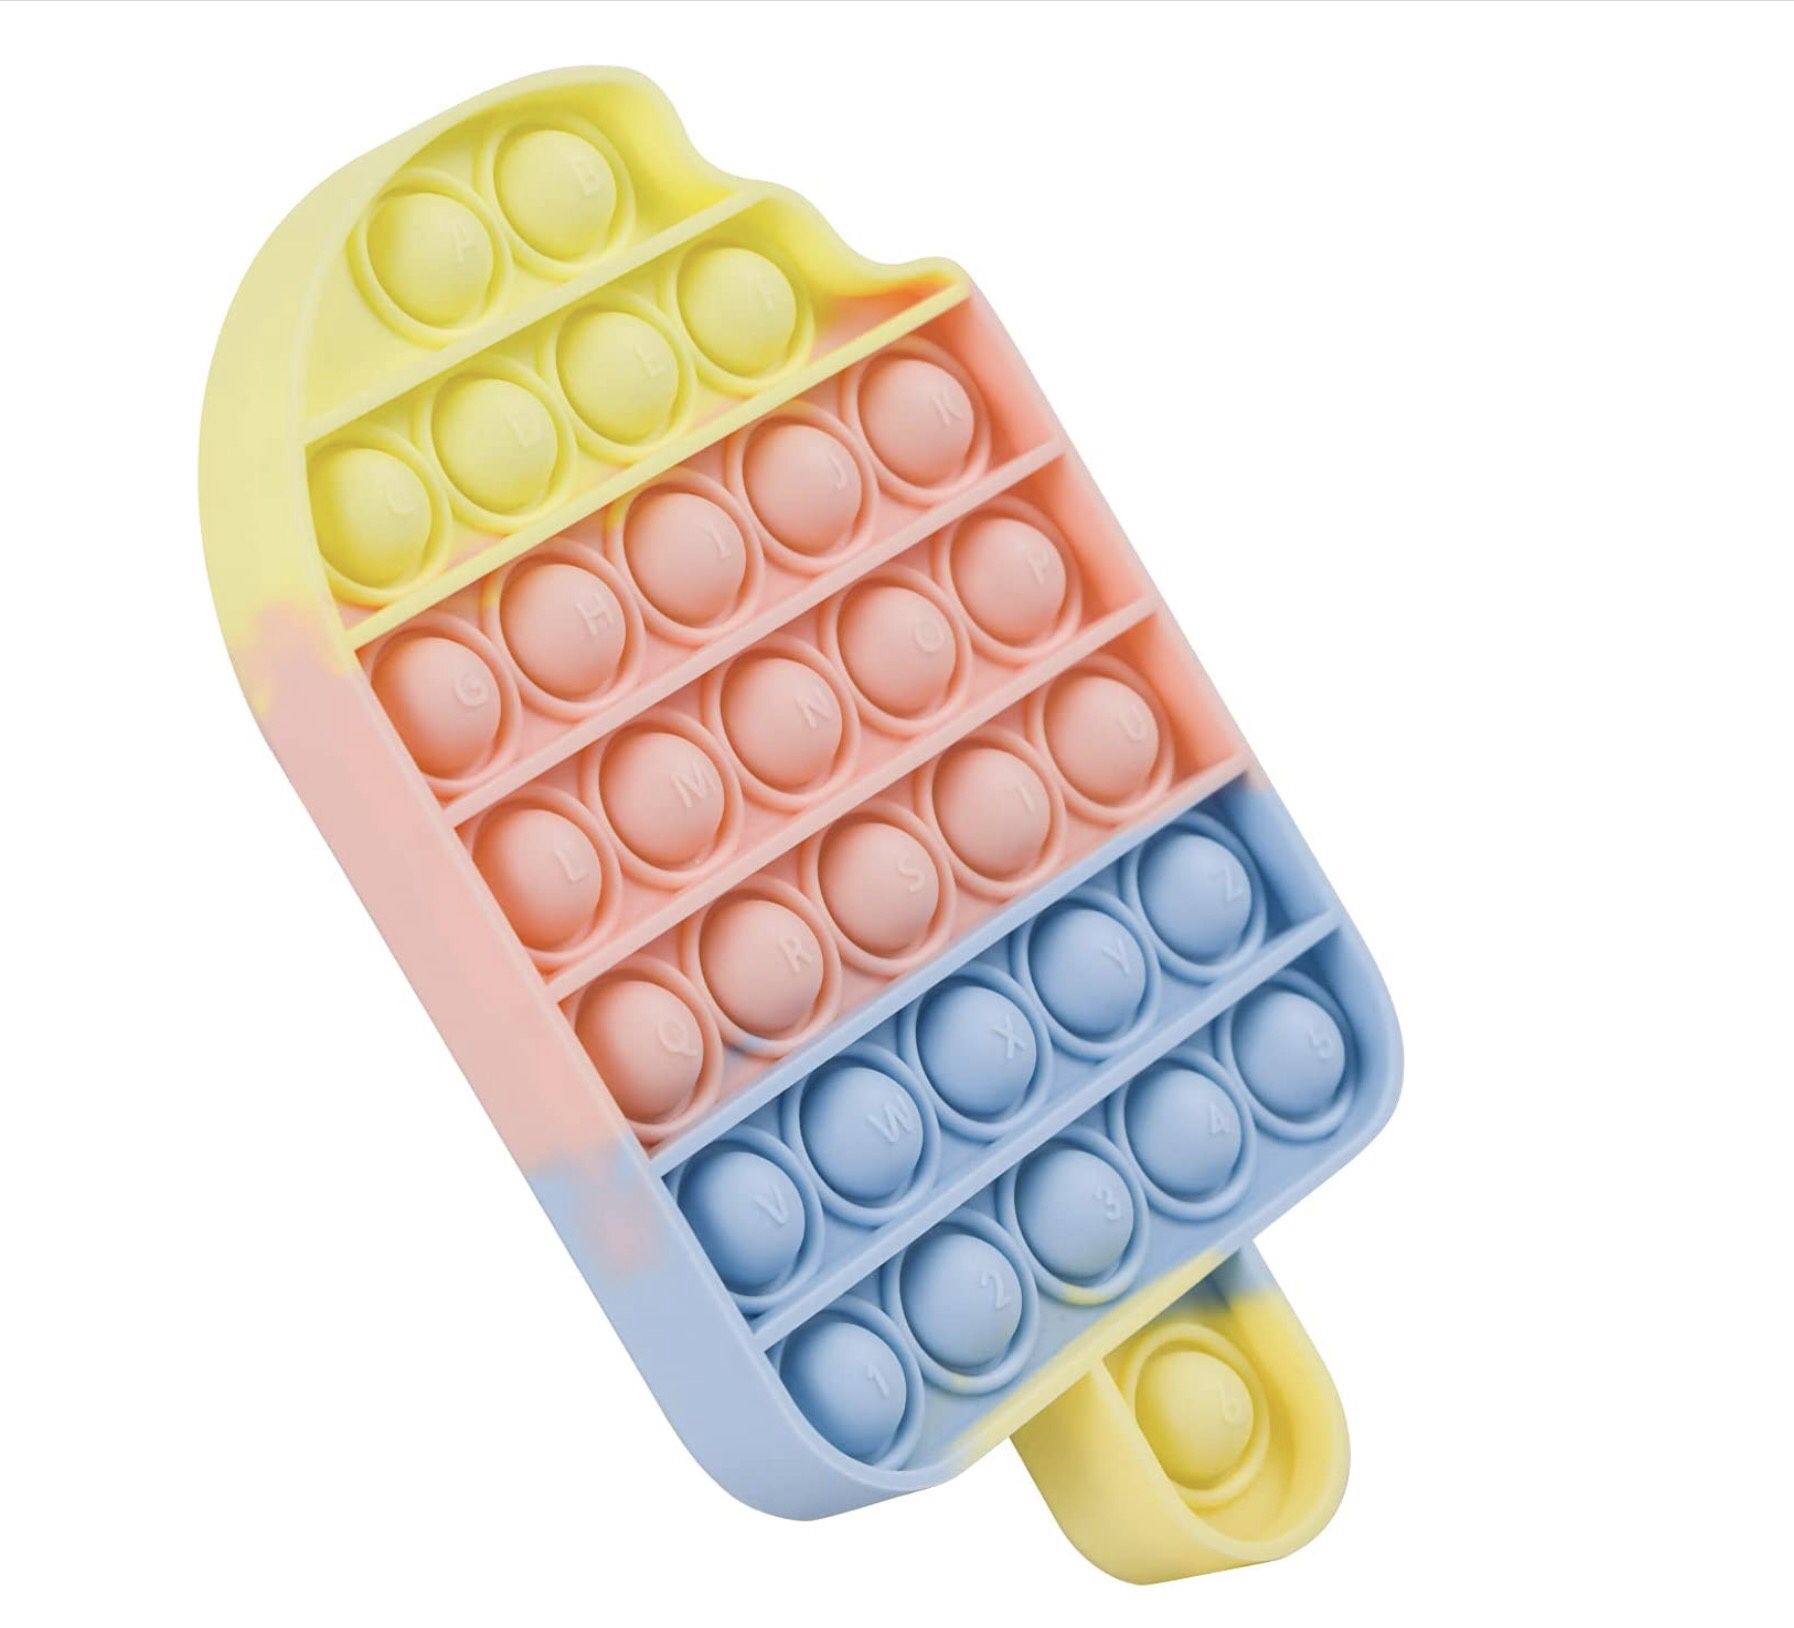 Push Pop Bubble Fidget Sensory Toy - Push Fidget Toy for Kids Autism Special Needs Stress Reliever Silicone Squeeze Sensory Stress Reliever Toy (Ice C